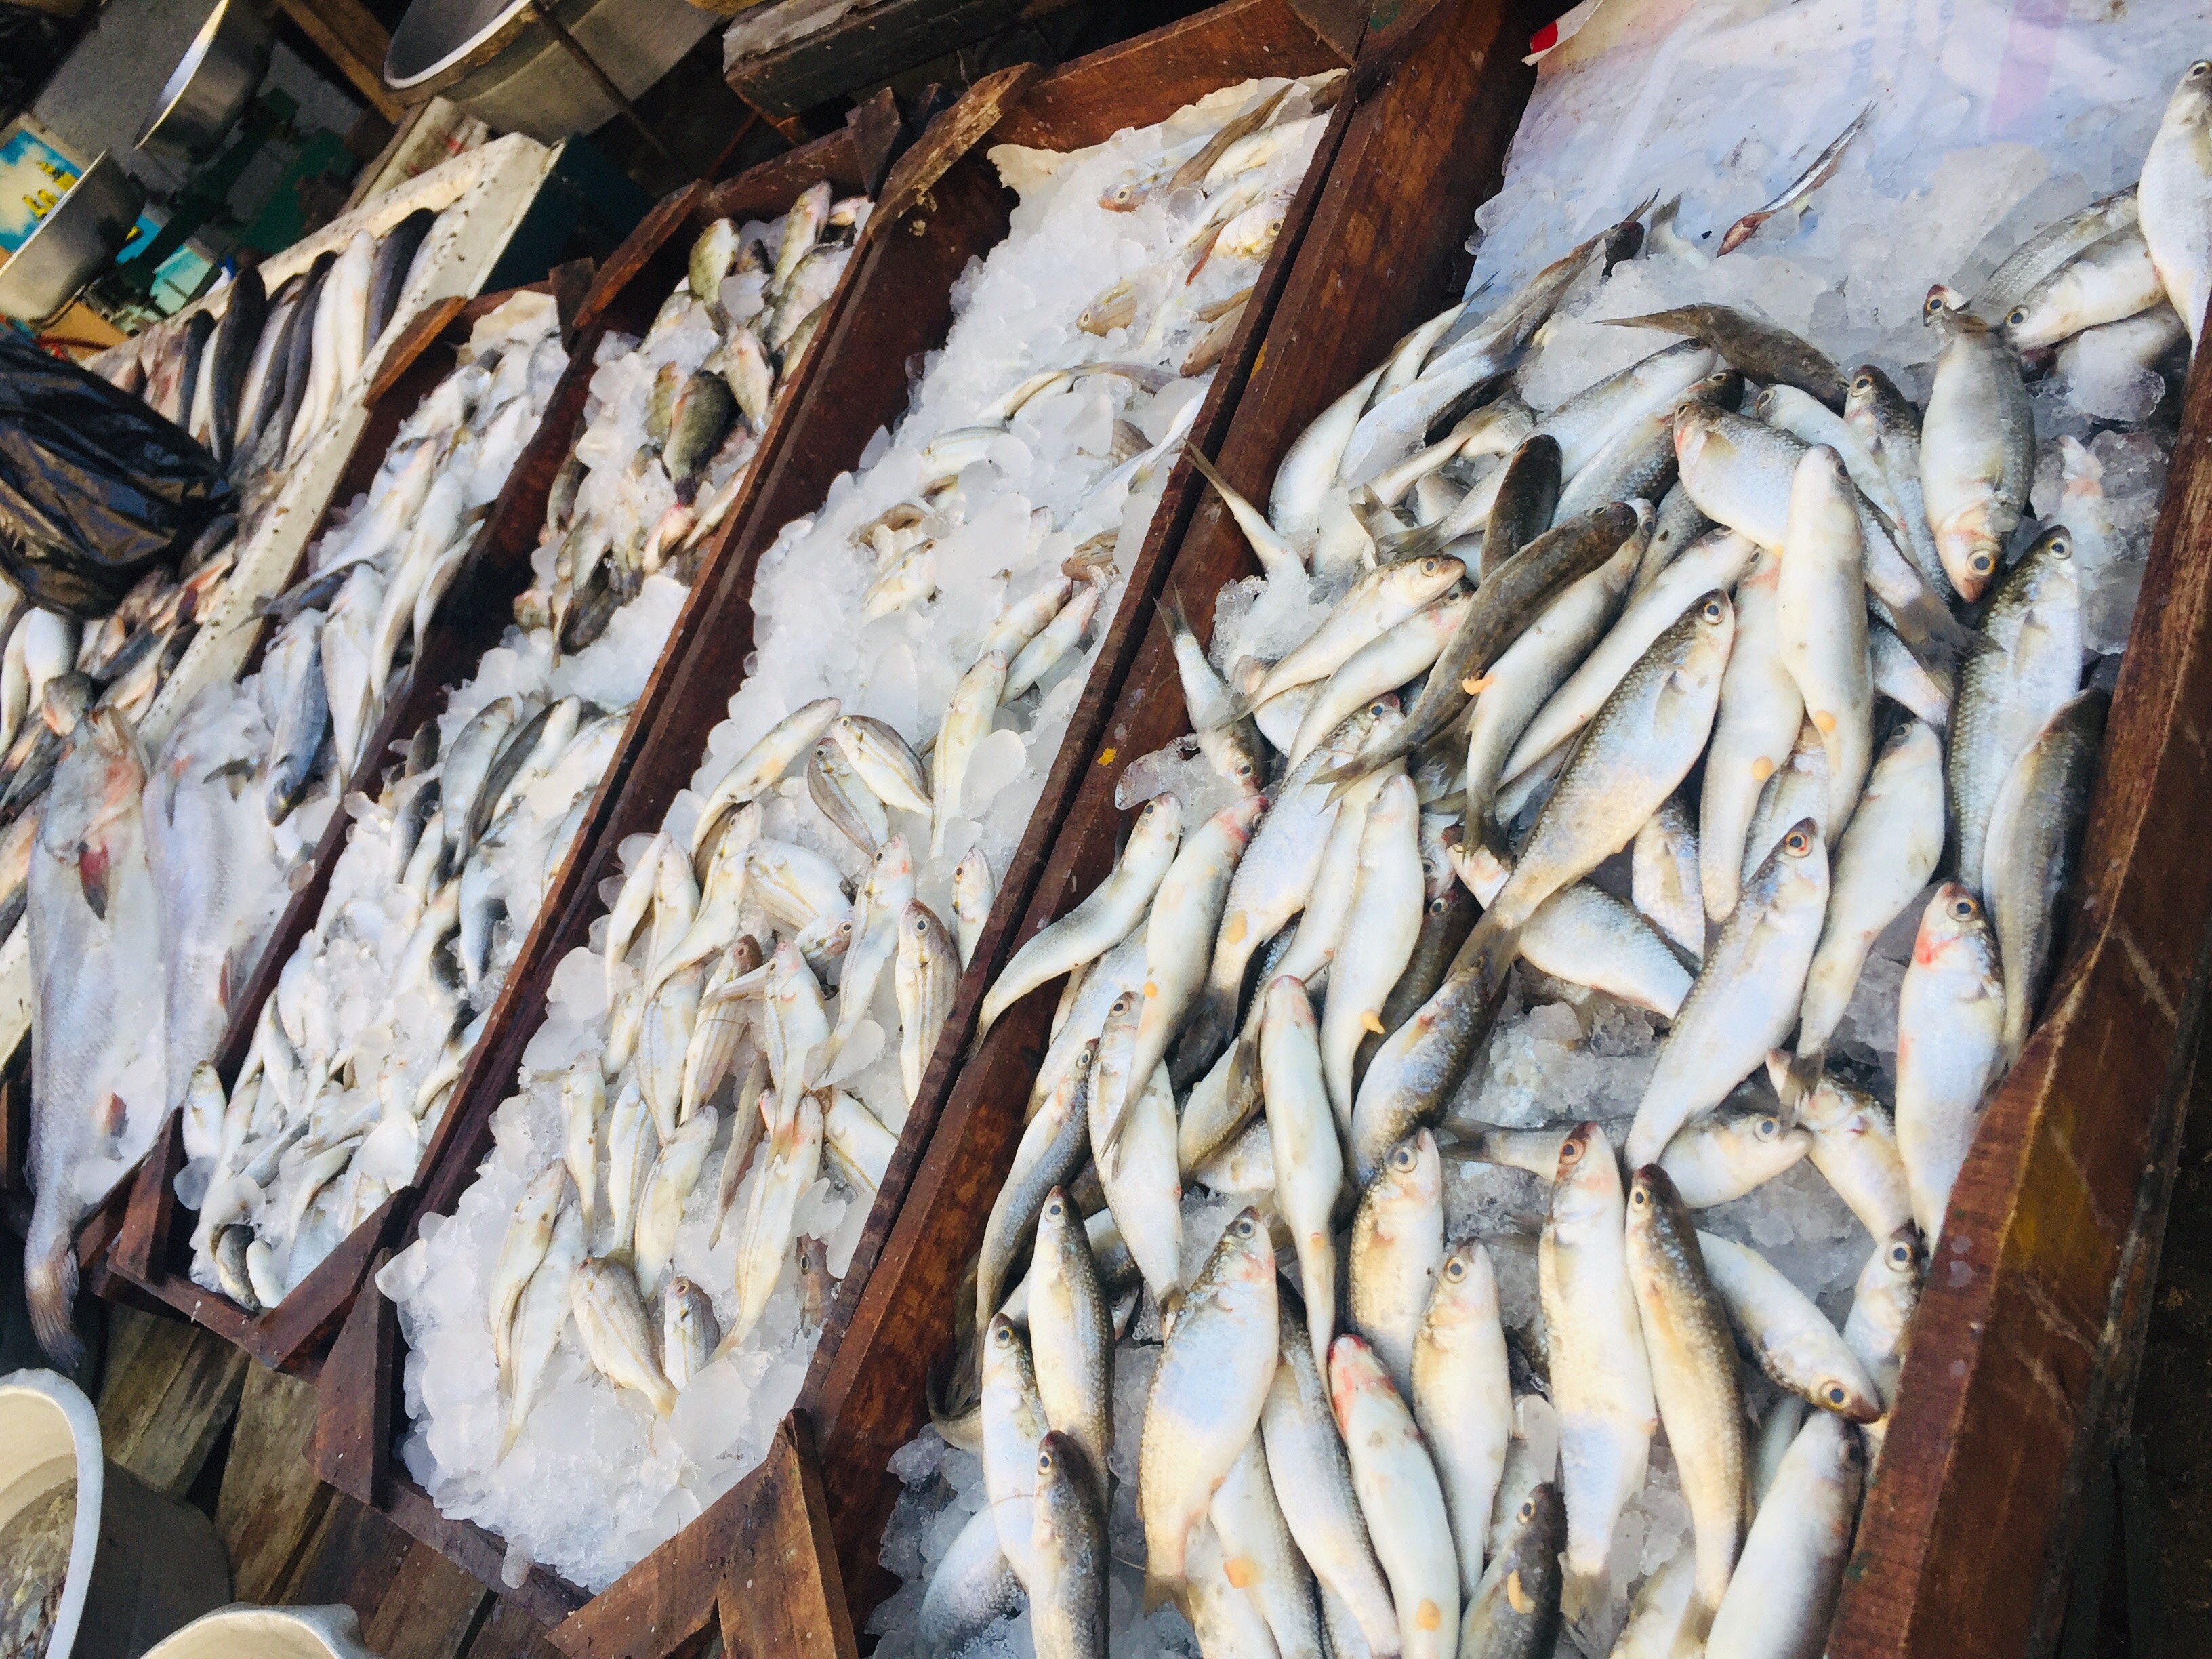  سوق بورسعيد للأسماك بمحافظة الإسماعيلية (12)